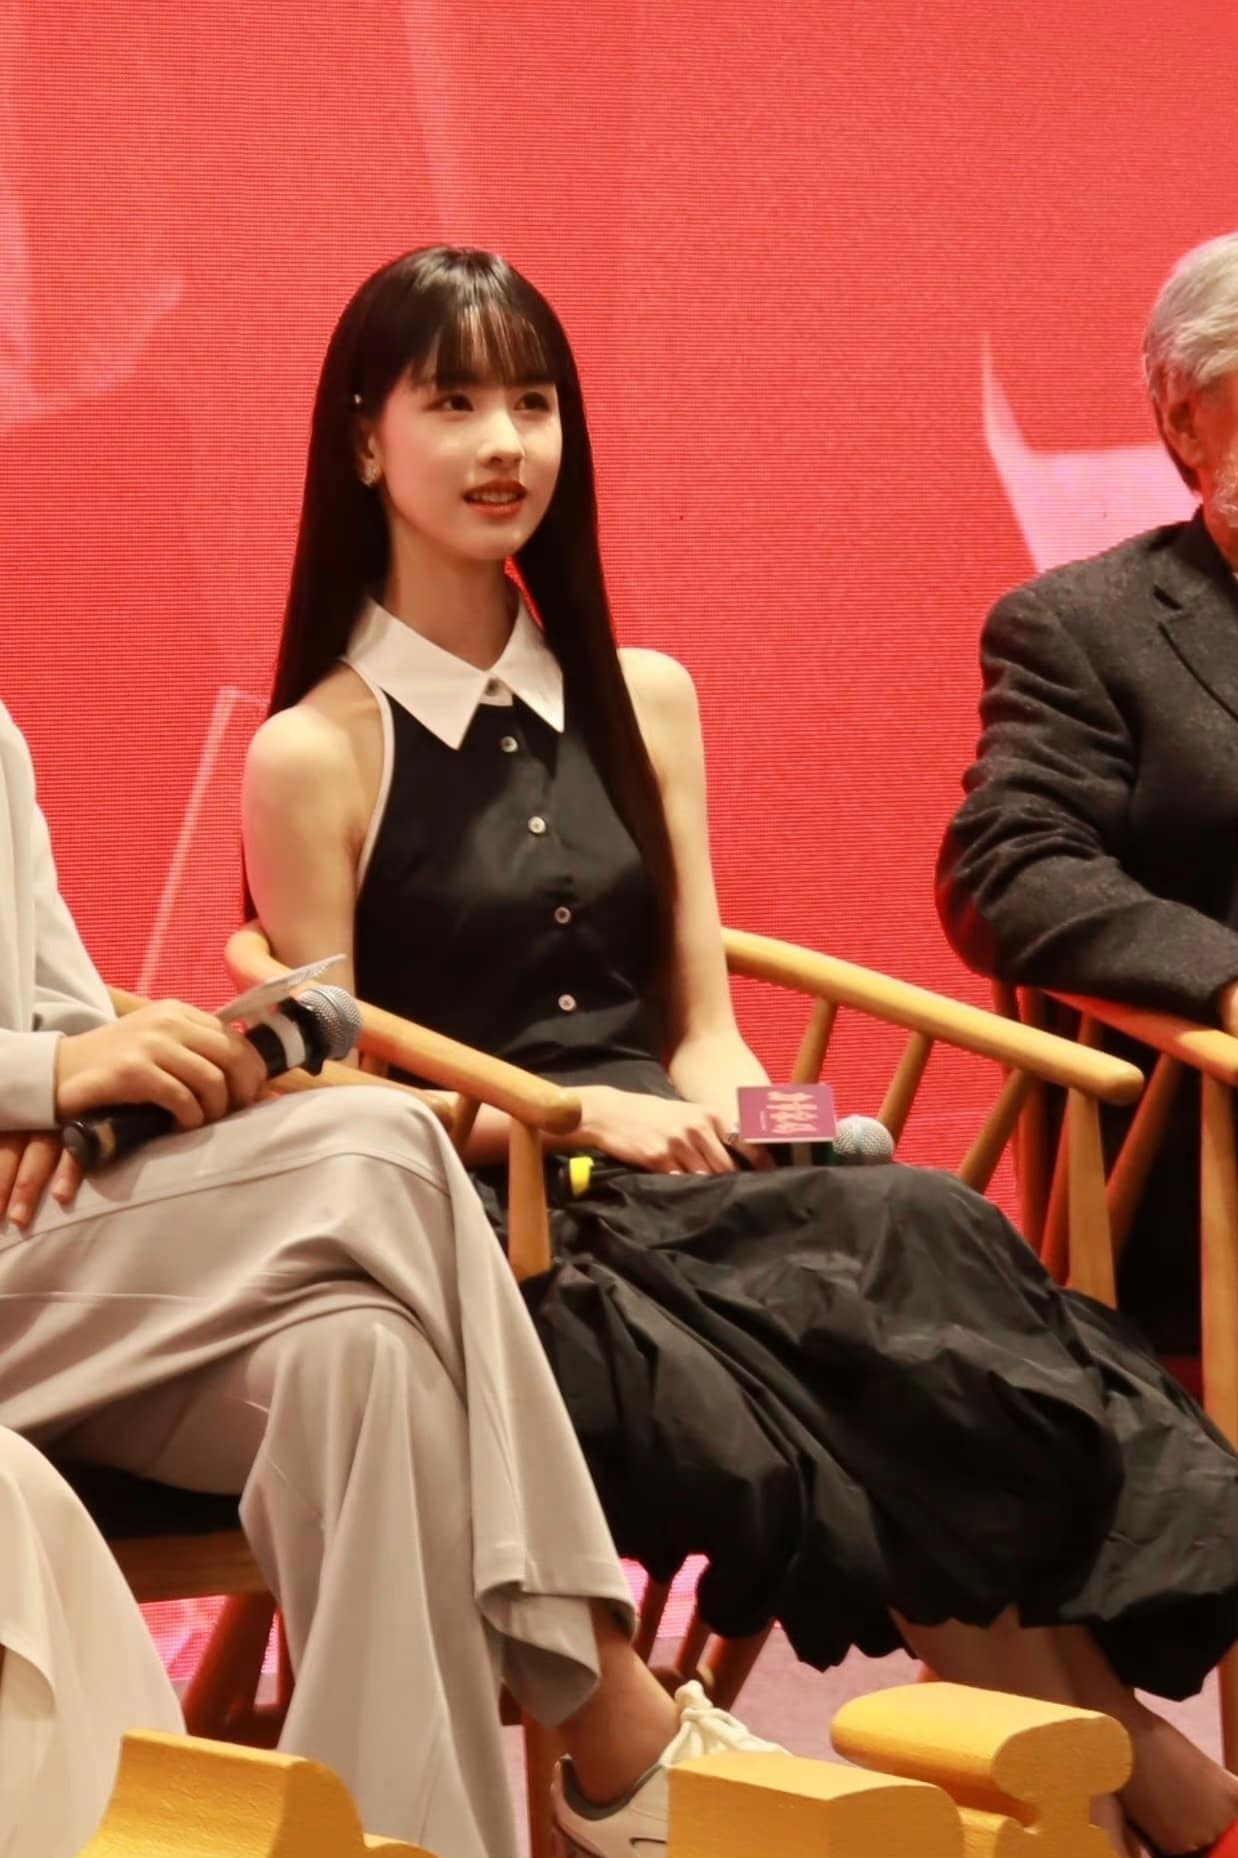 Tóc mới của Trần Đô Linh trong buổi quảng bá phim sắp chiếu được ví như 'nữ sinh gieo rắc nỗi kinh hoàng trong học đường' của manga Nhật Bản - Ảnh 2